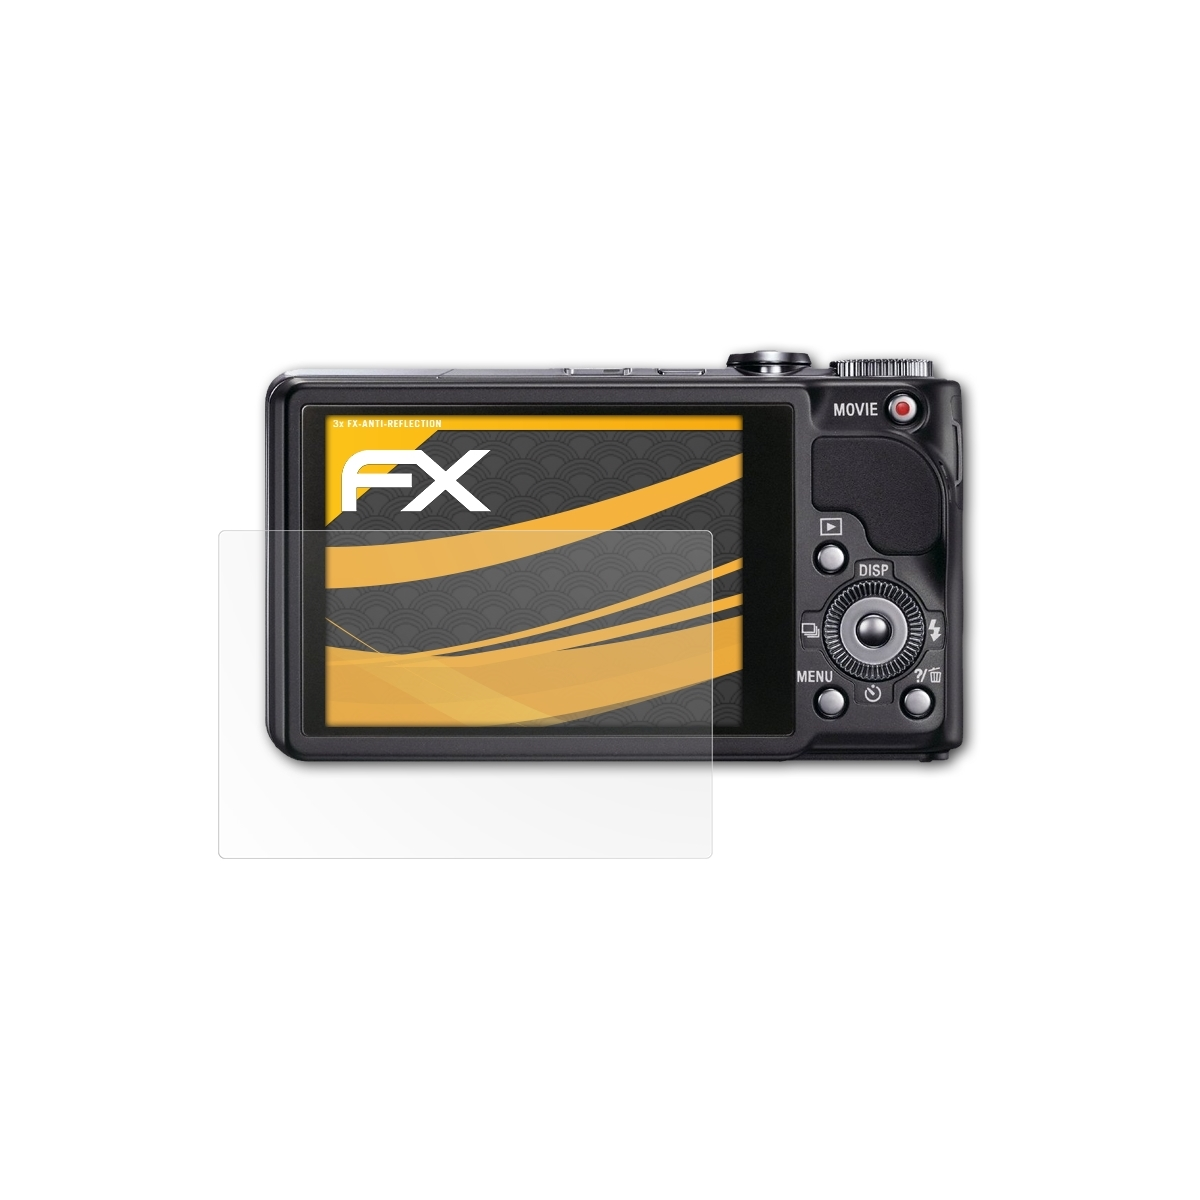 ATFOLIX 3x DSC-HX9V) FX-Antireflex Sony Displayschutz(für